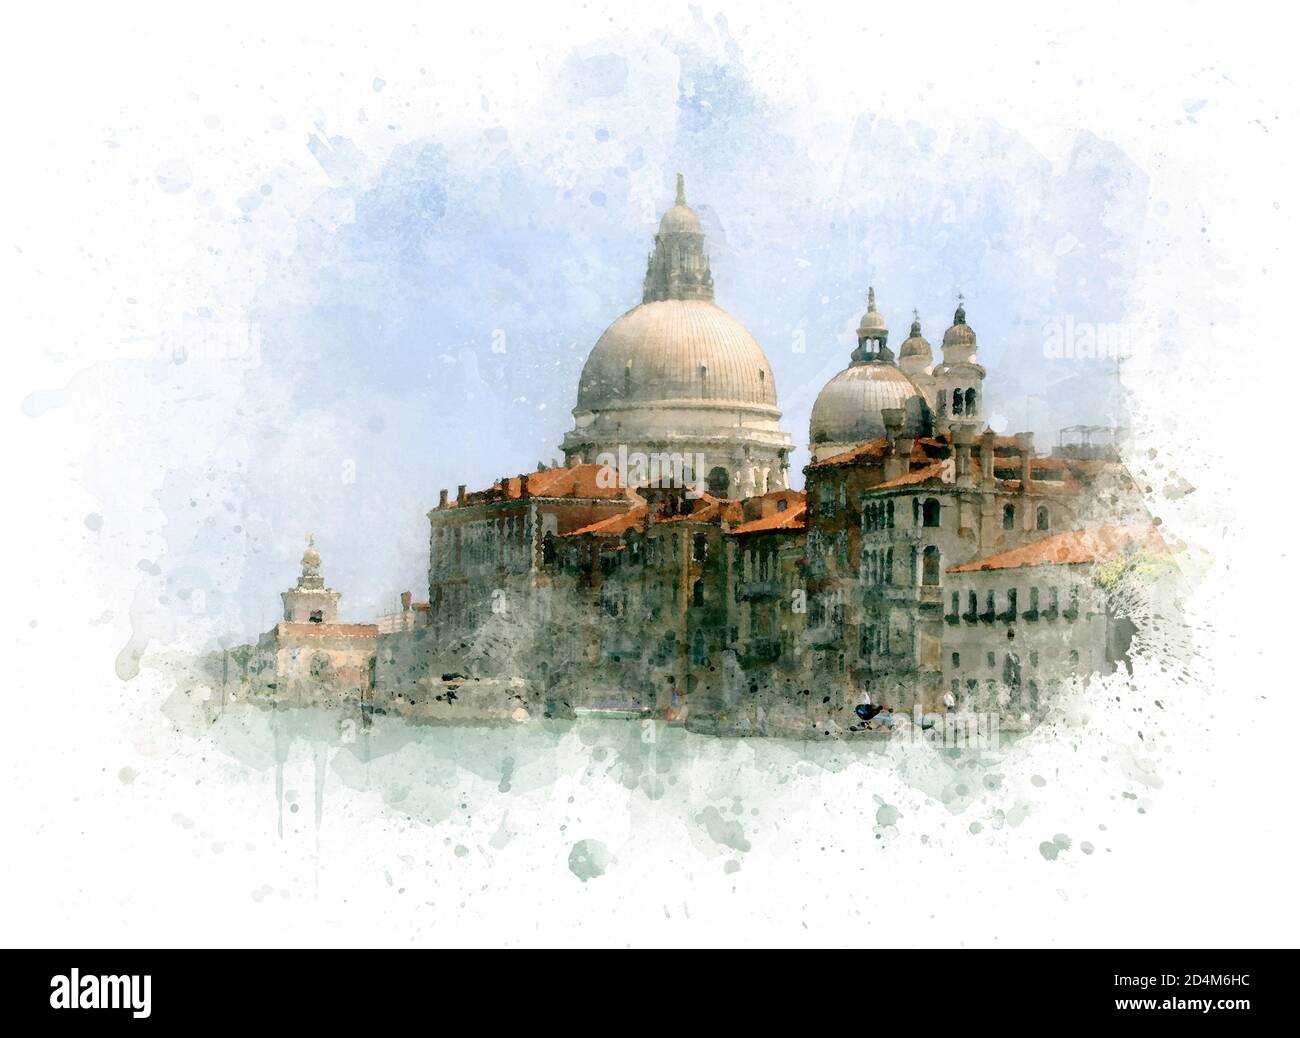 Venise, église Santa Maria della Salute par aquarelle technique, illustration Banque D'Images